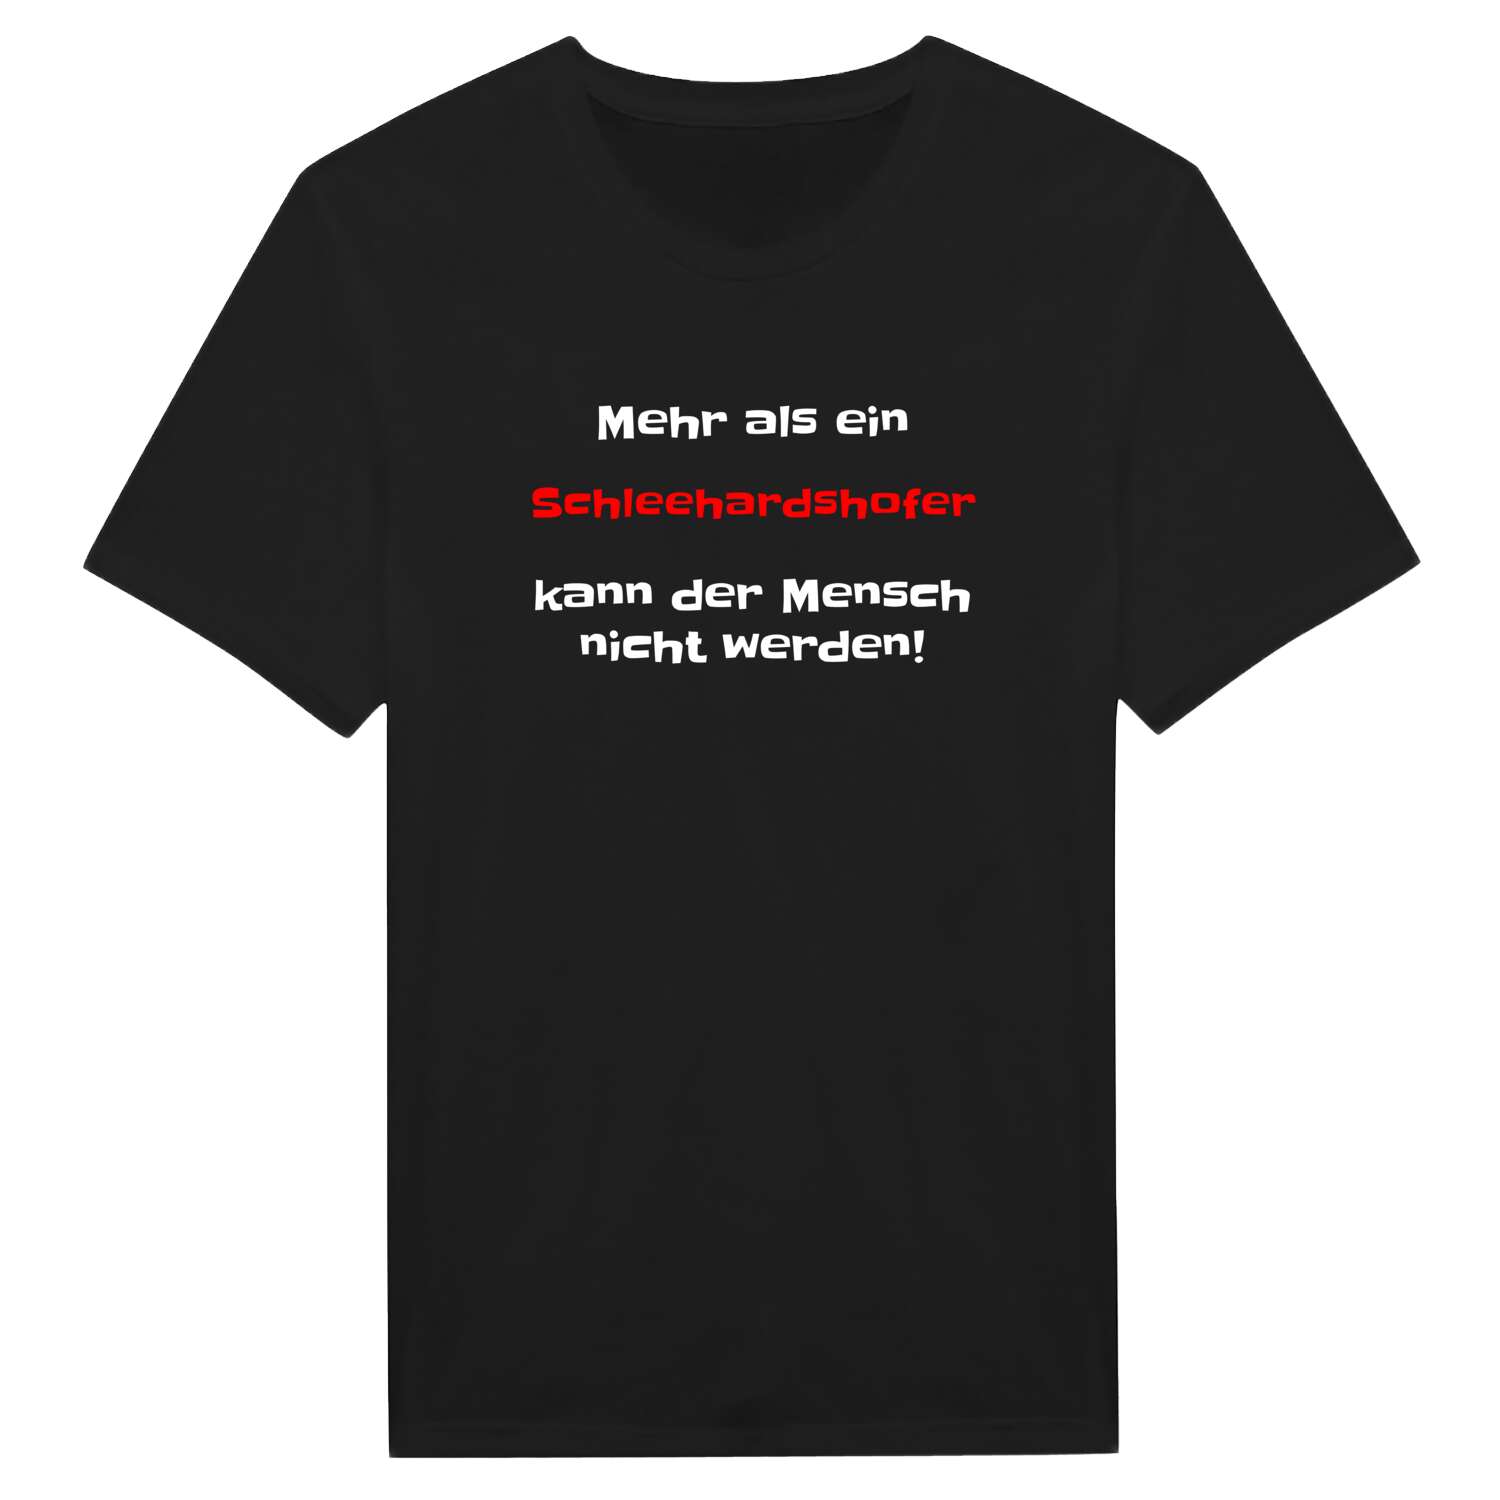 Schleehardshof T-Shirt »Mehr als ein«